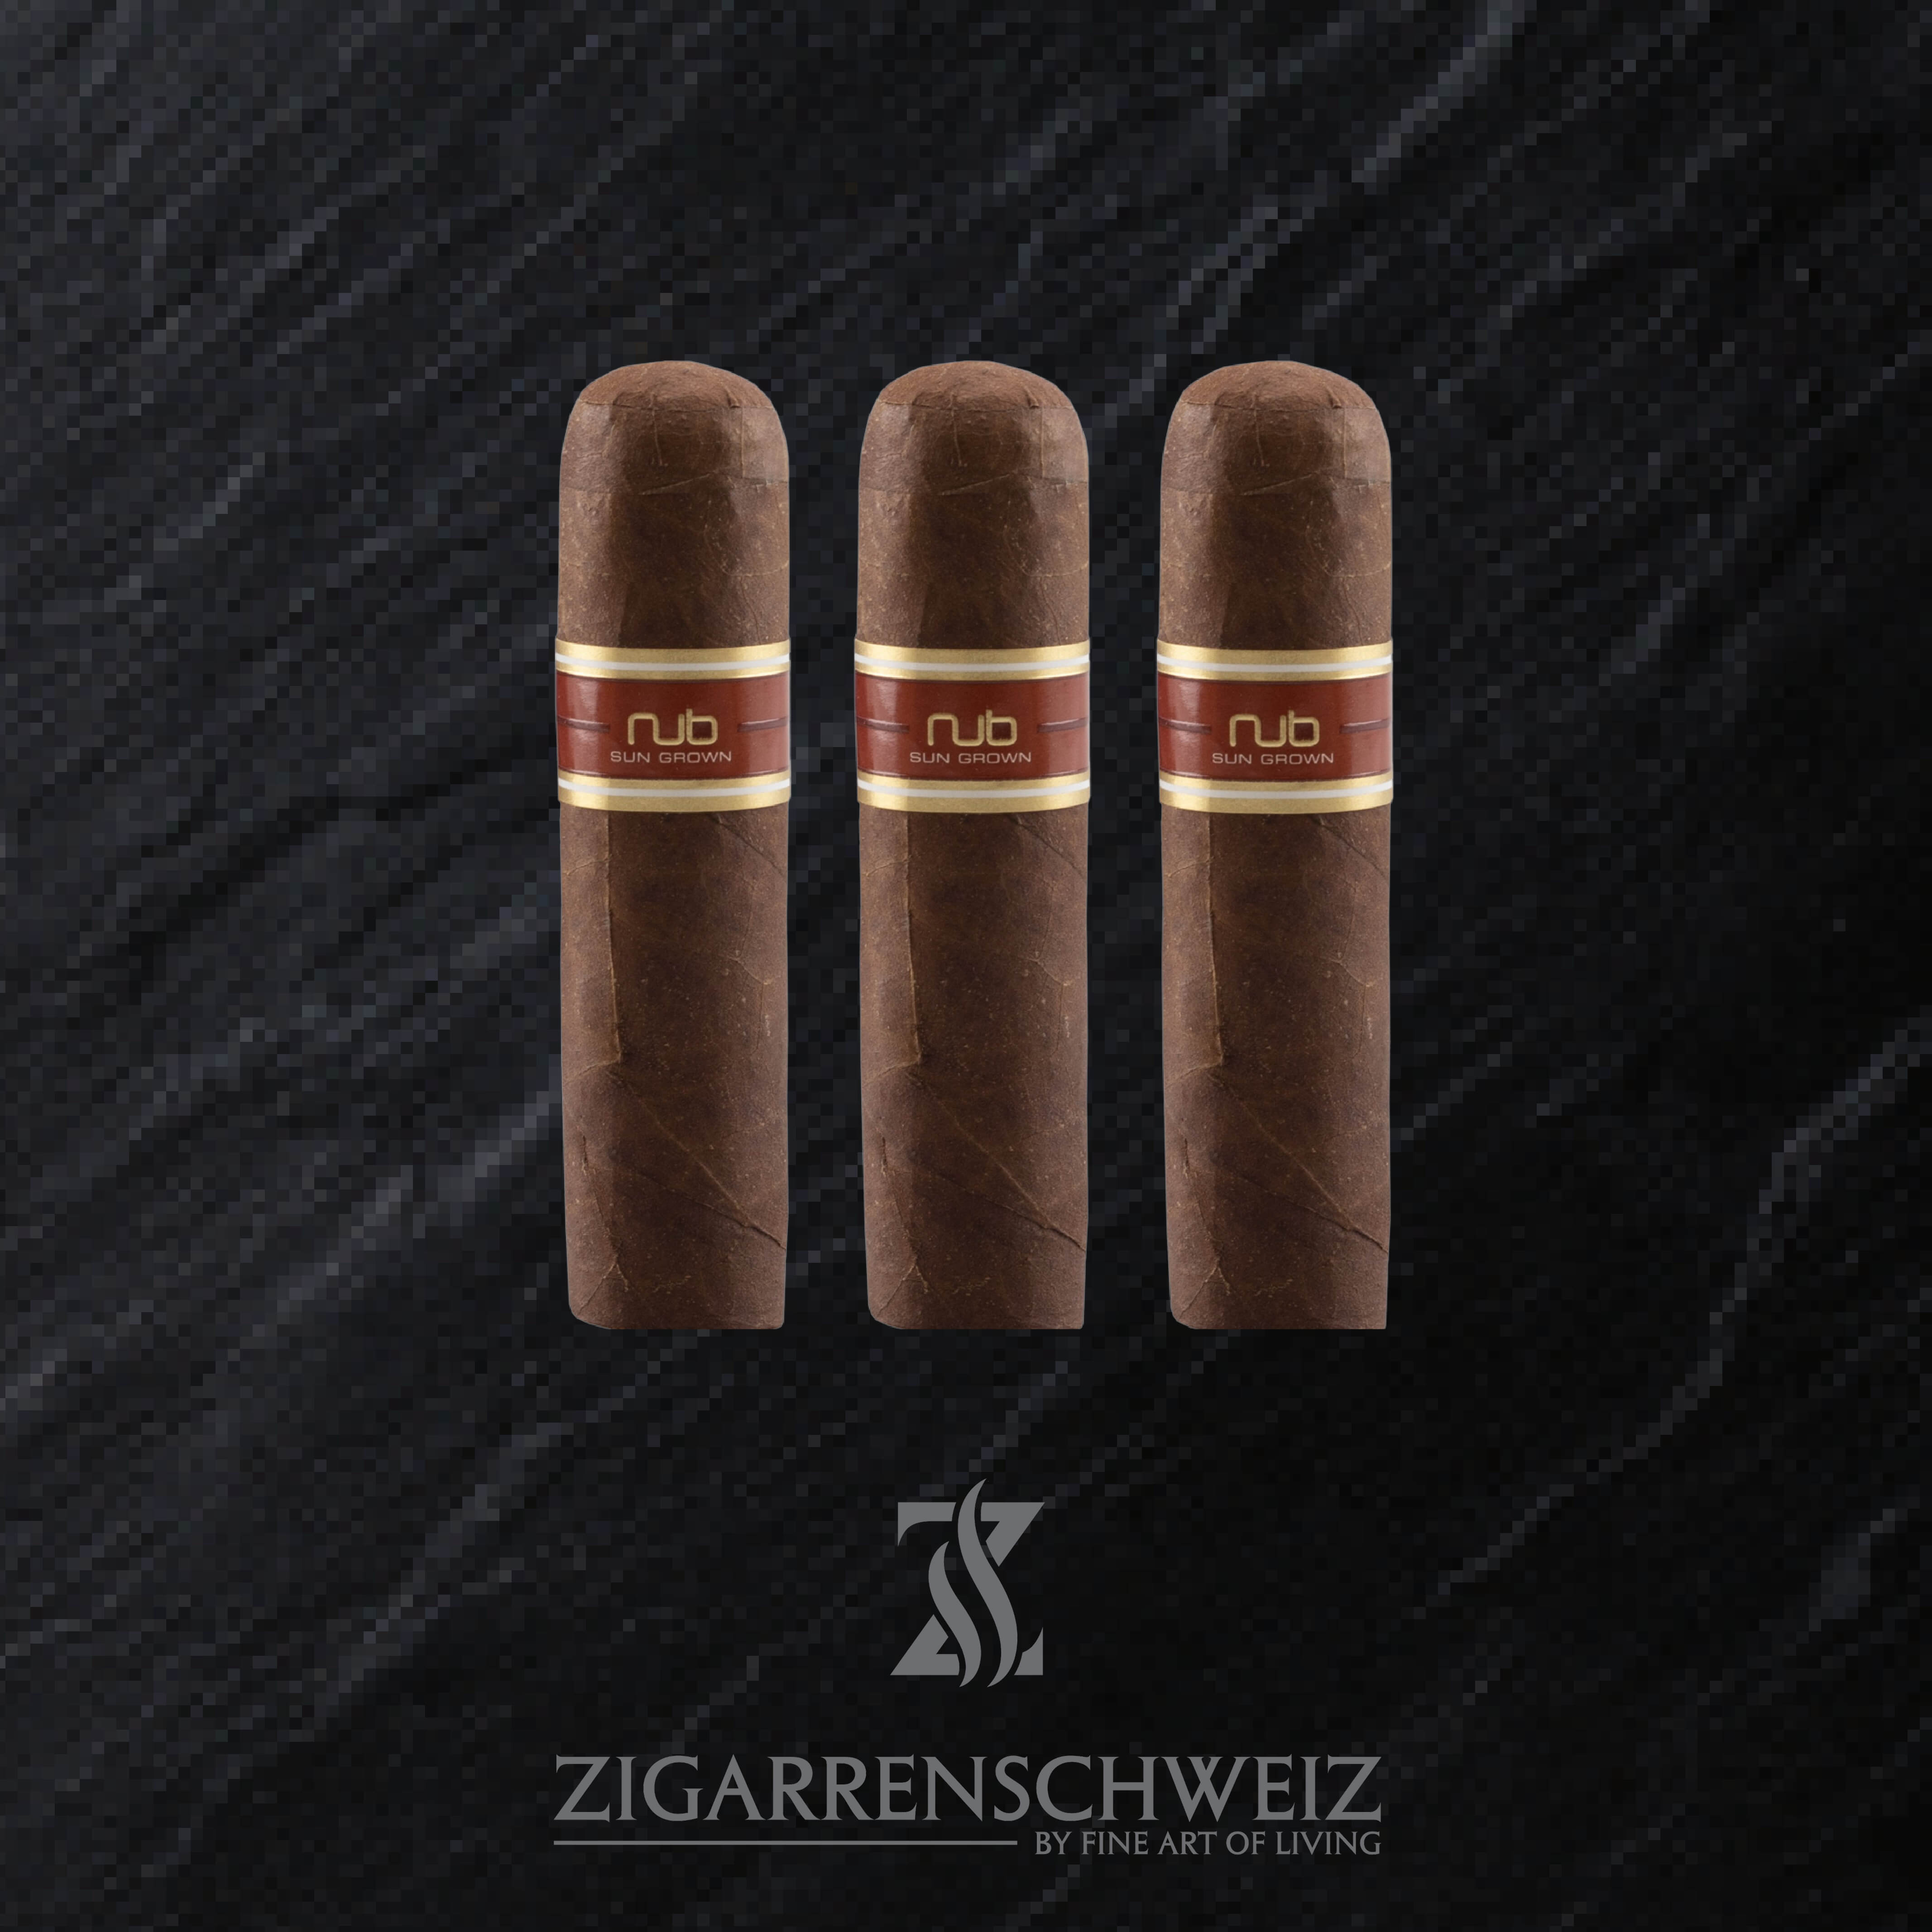 NUB Sun Grown 460 Zigarren 3er Etui von Zigarren Schweiz